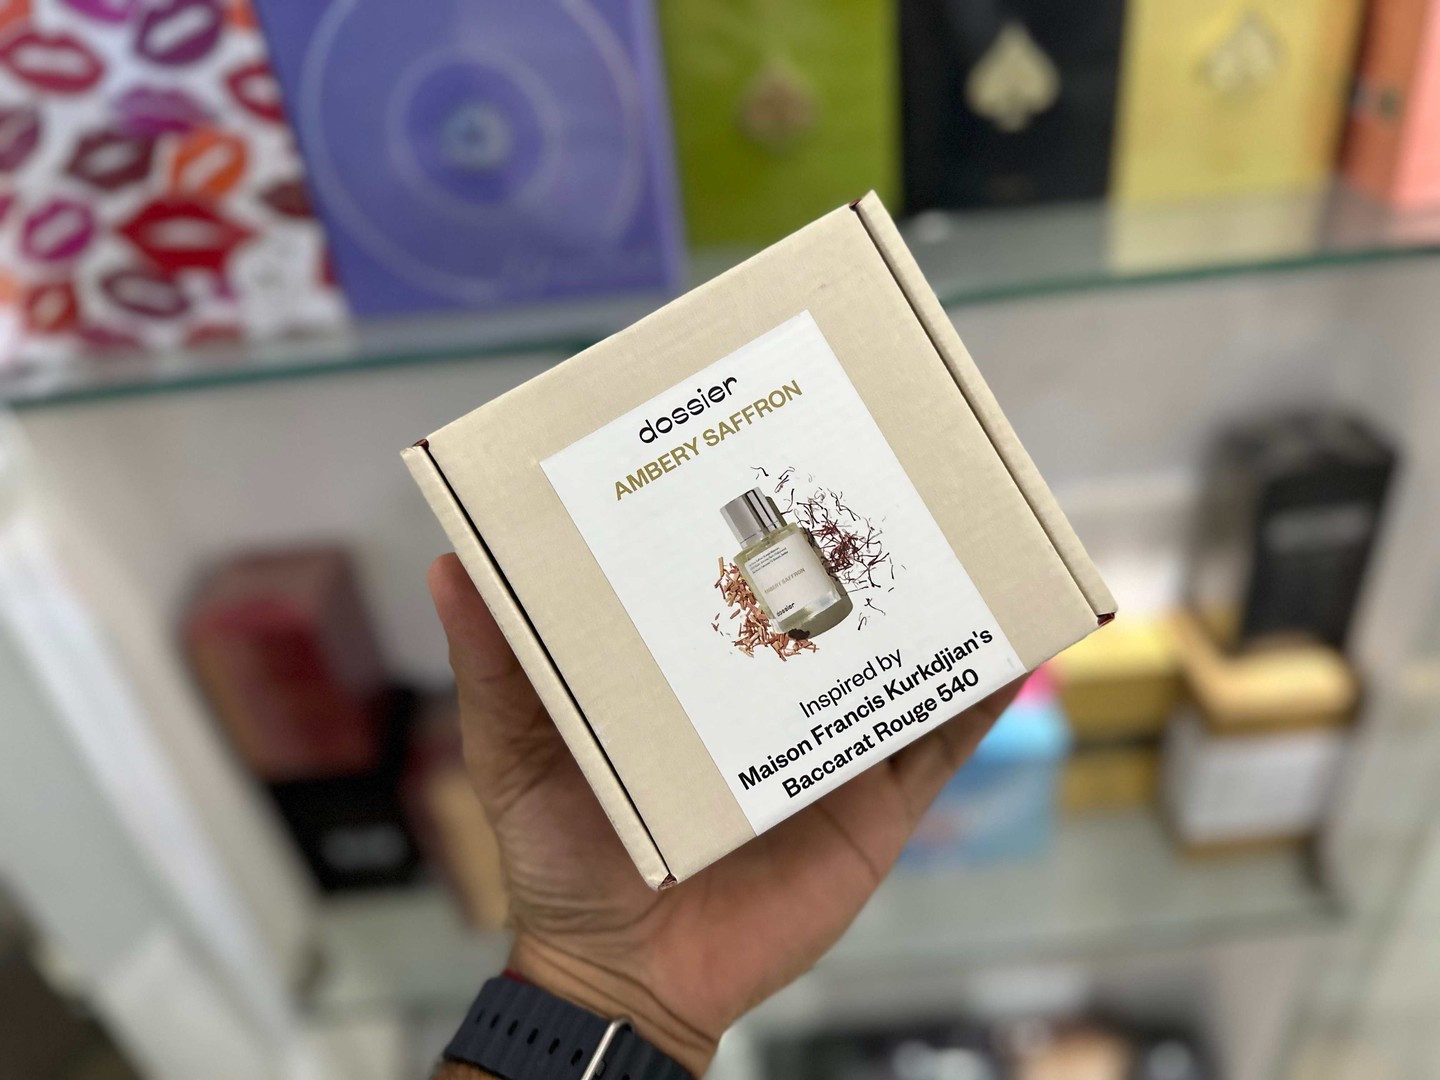 salud y belleza - Vendo Perfumes Dossier Ambery Saffron inspirado Bacarat Rouge Nuevo $ 4,700 NEG 0